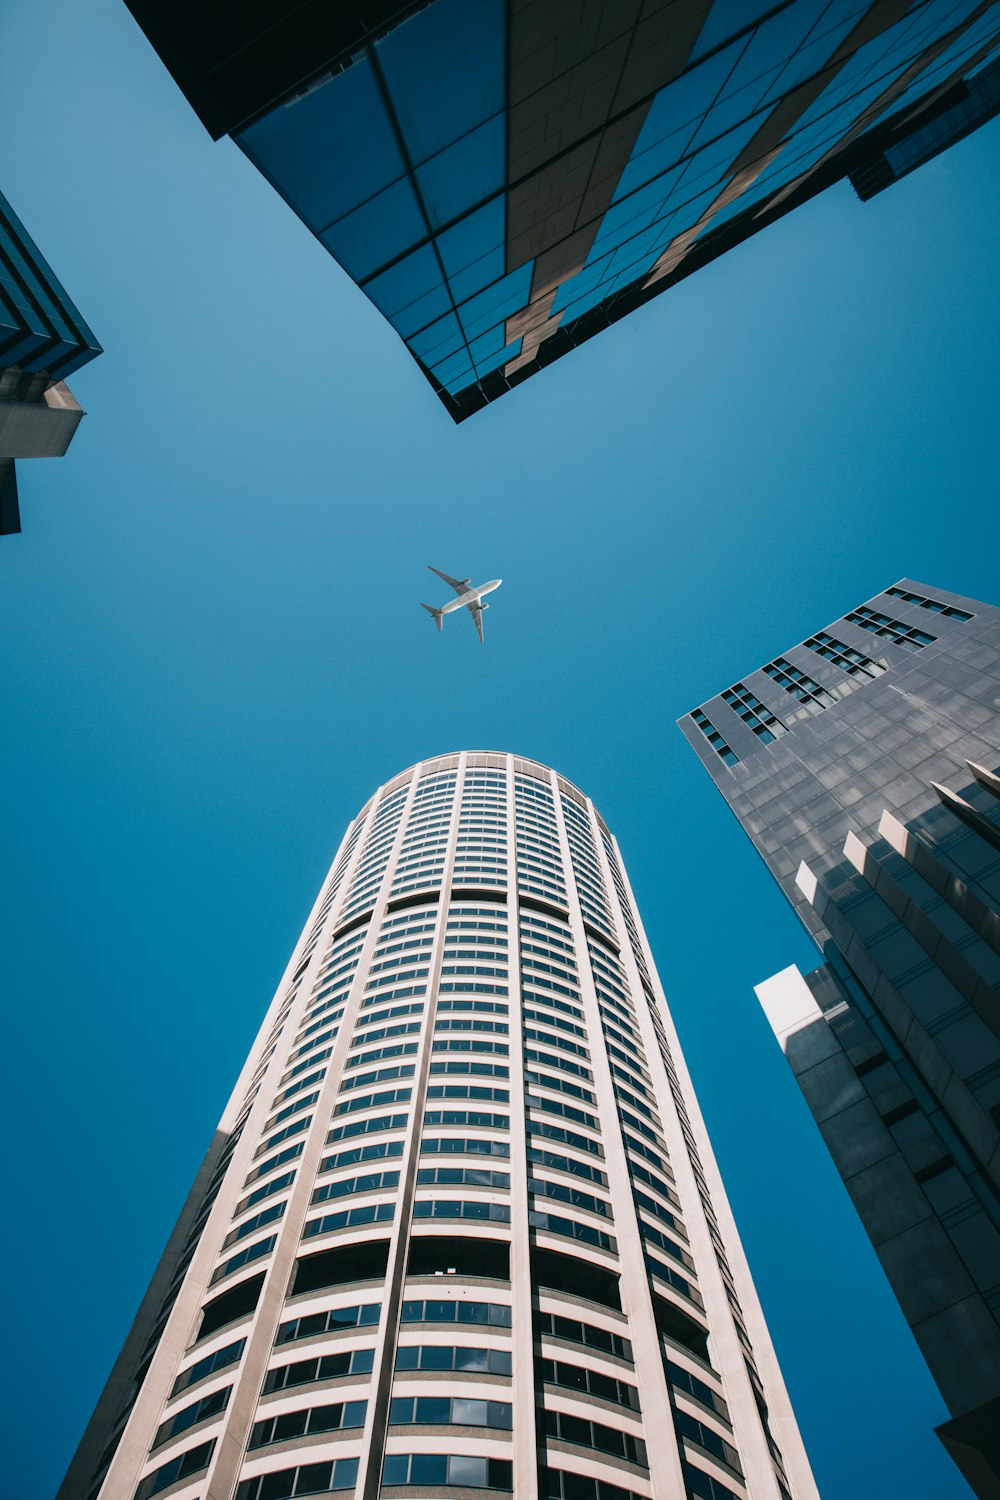 고층 건물 위로 하늘을 나는 비행기